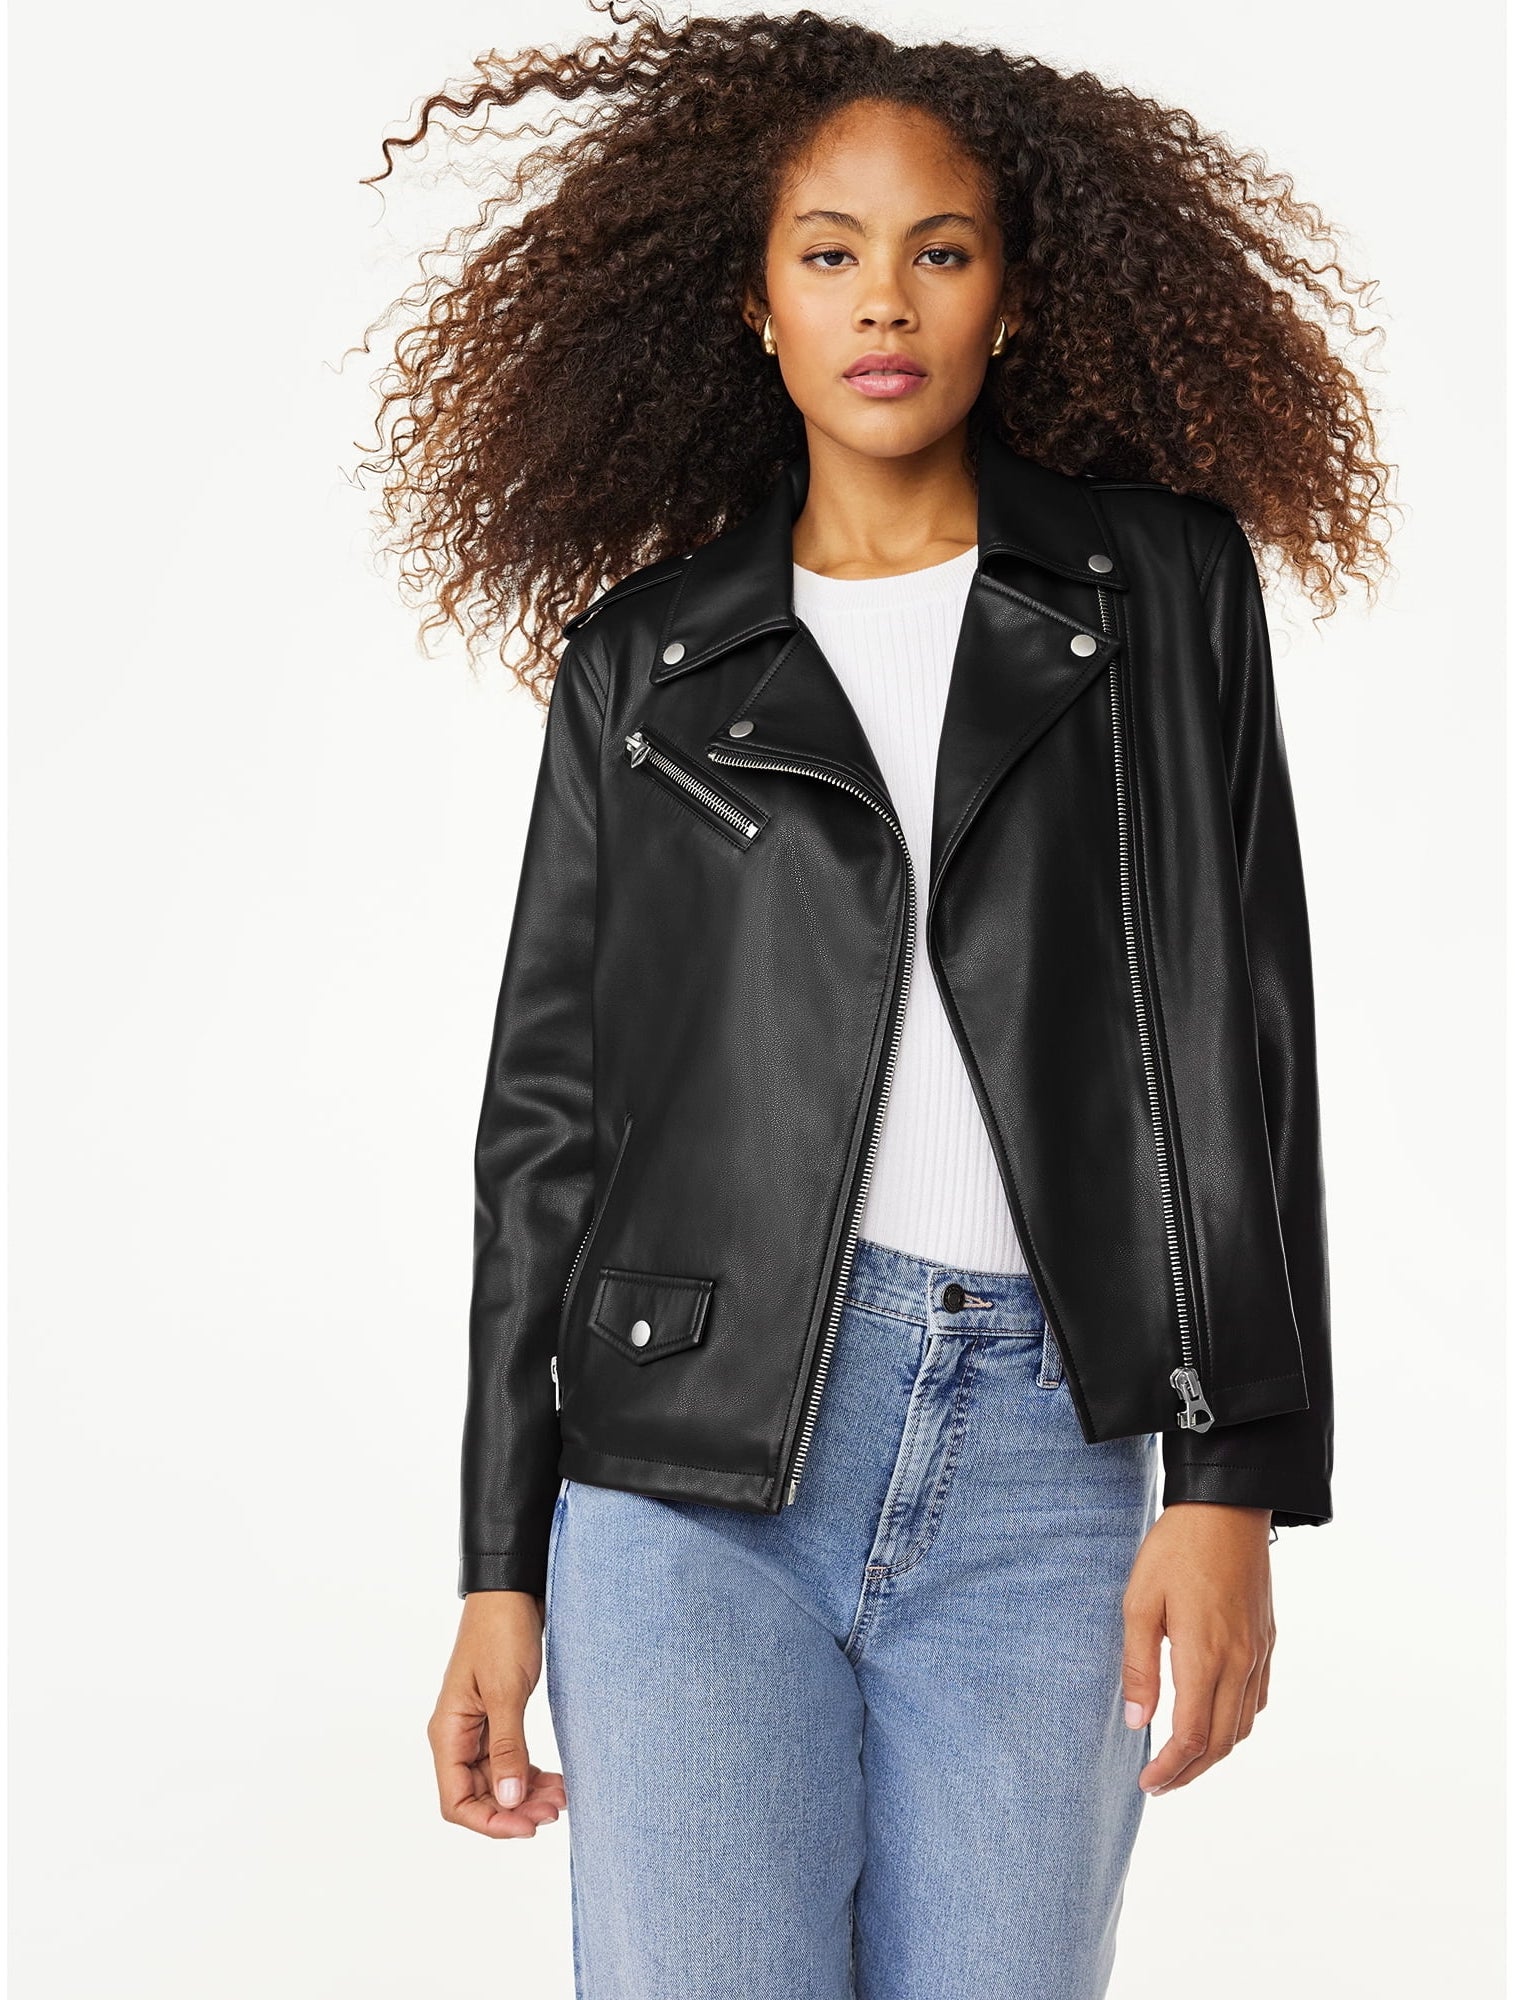 model wearing a black asymmetrical faux leather jacket